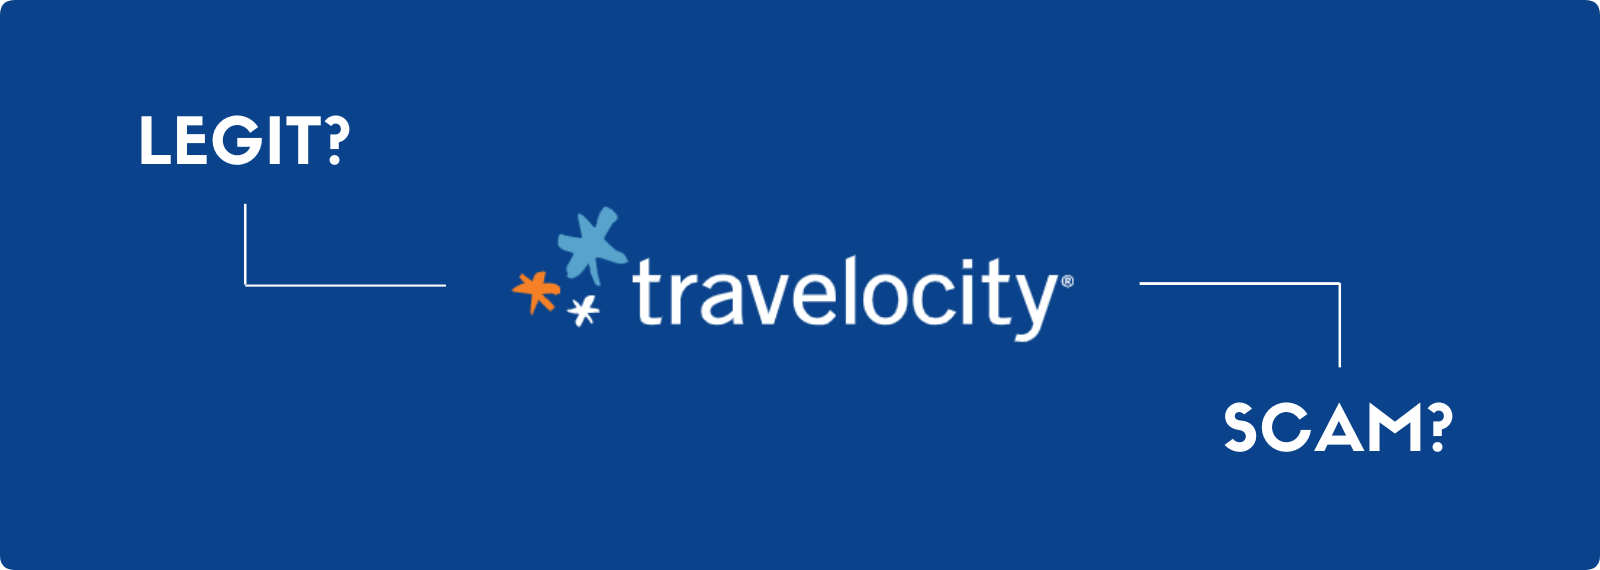 Is Travelocity Legitimate